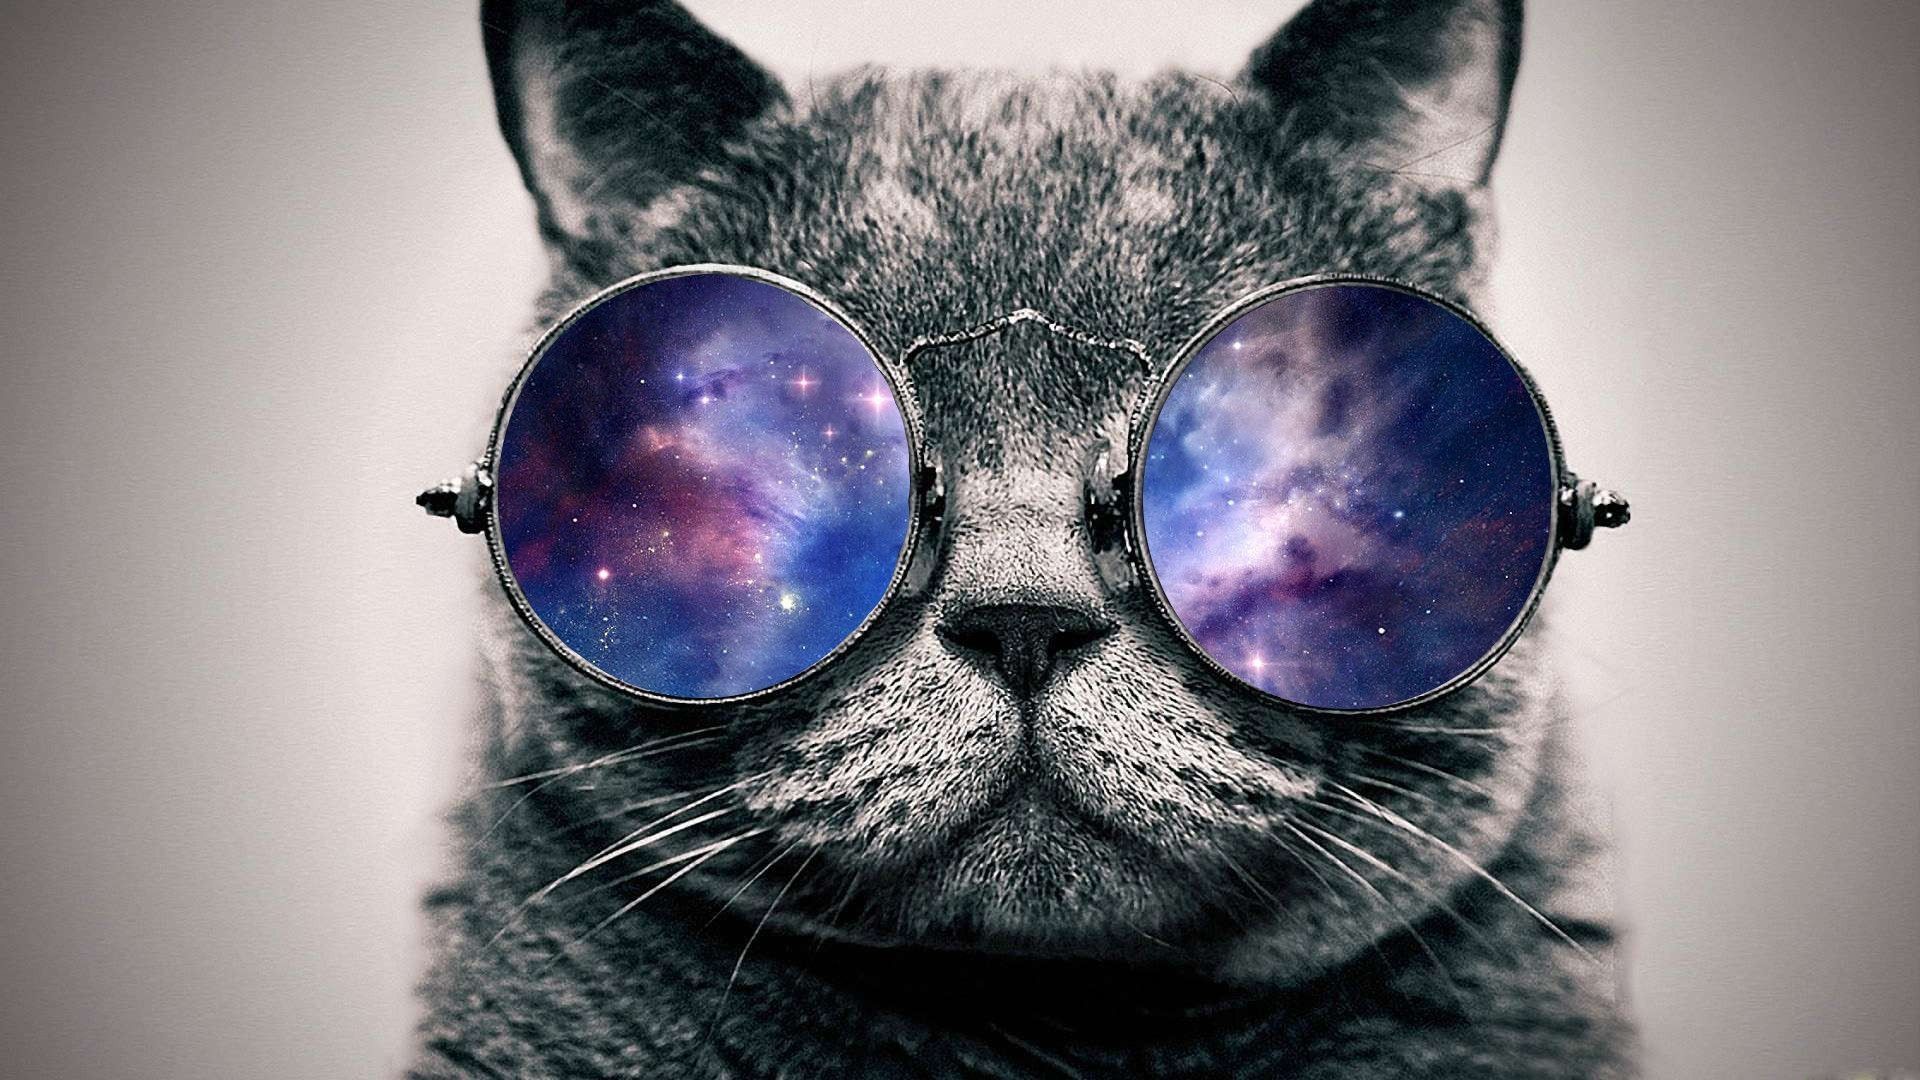 galaxy cat wallpaper tumblr